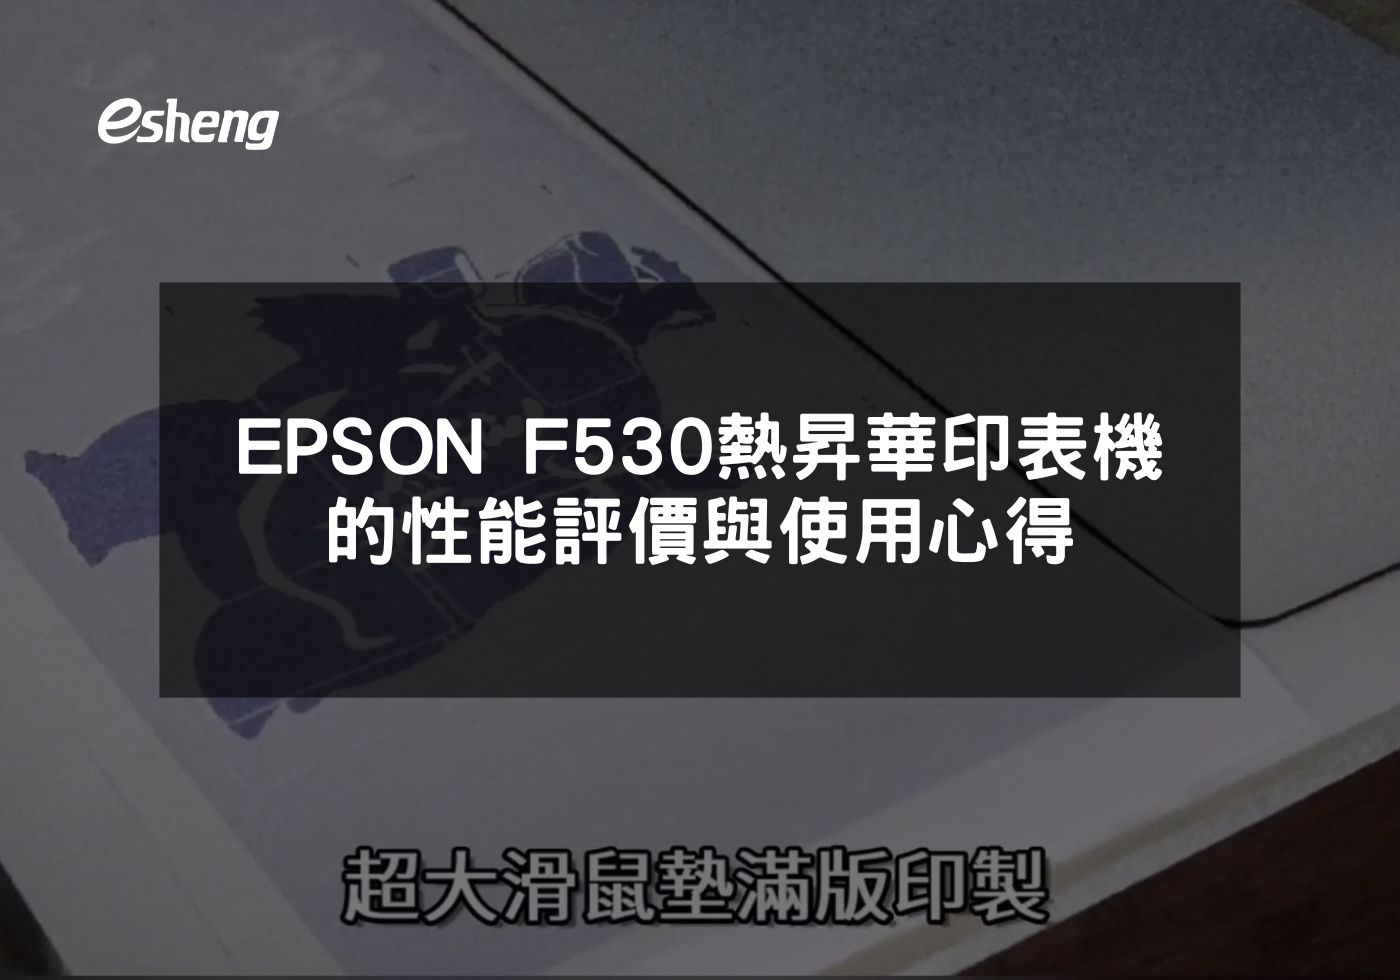 EPSON F530高效能熱昇華印表機完美適合專業使用